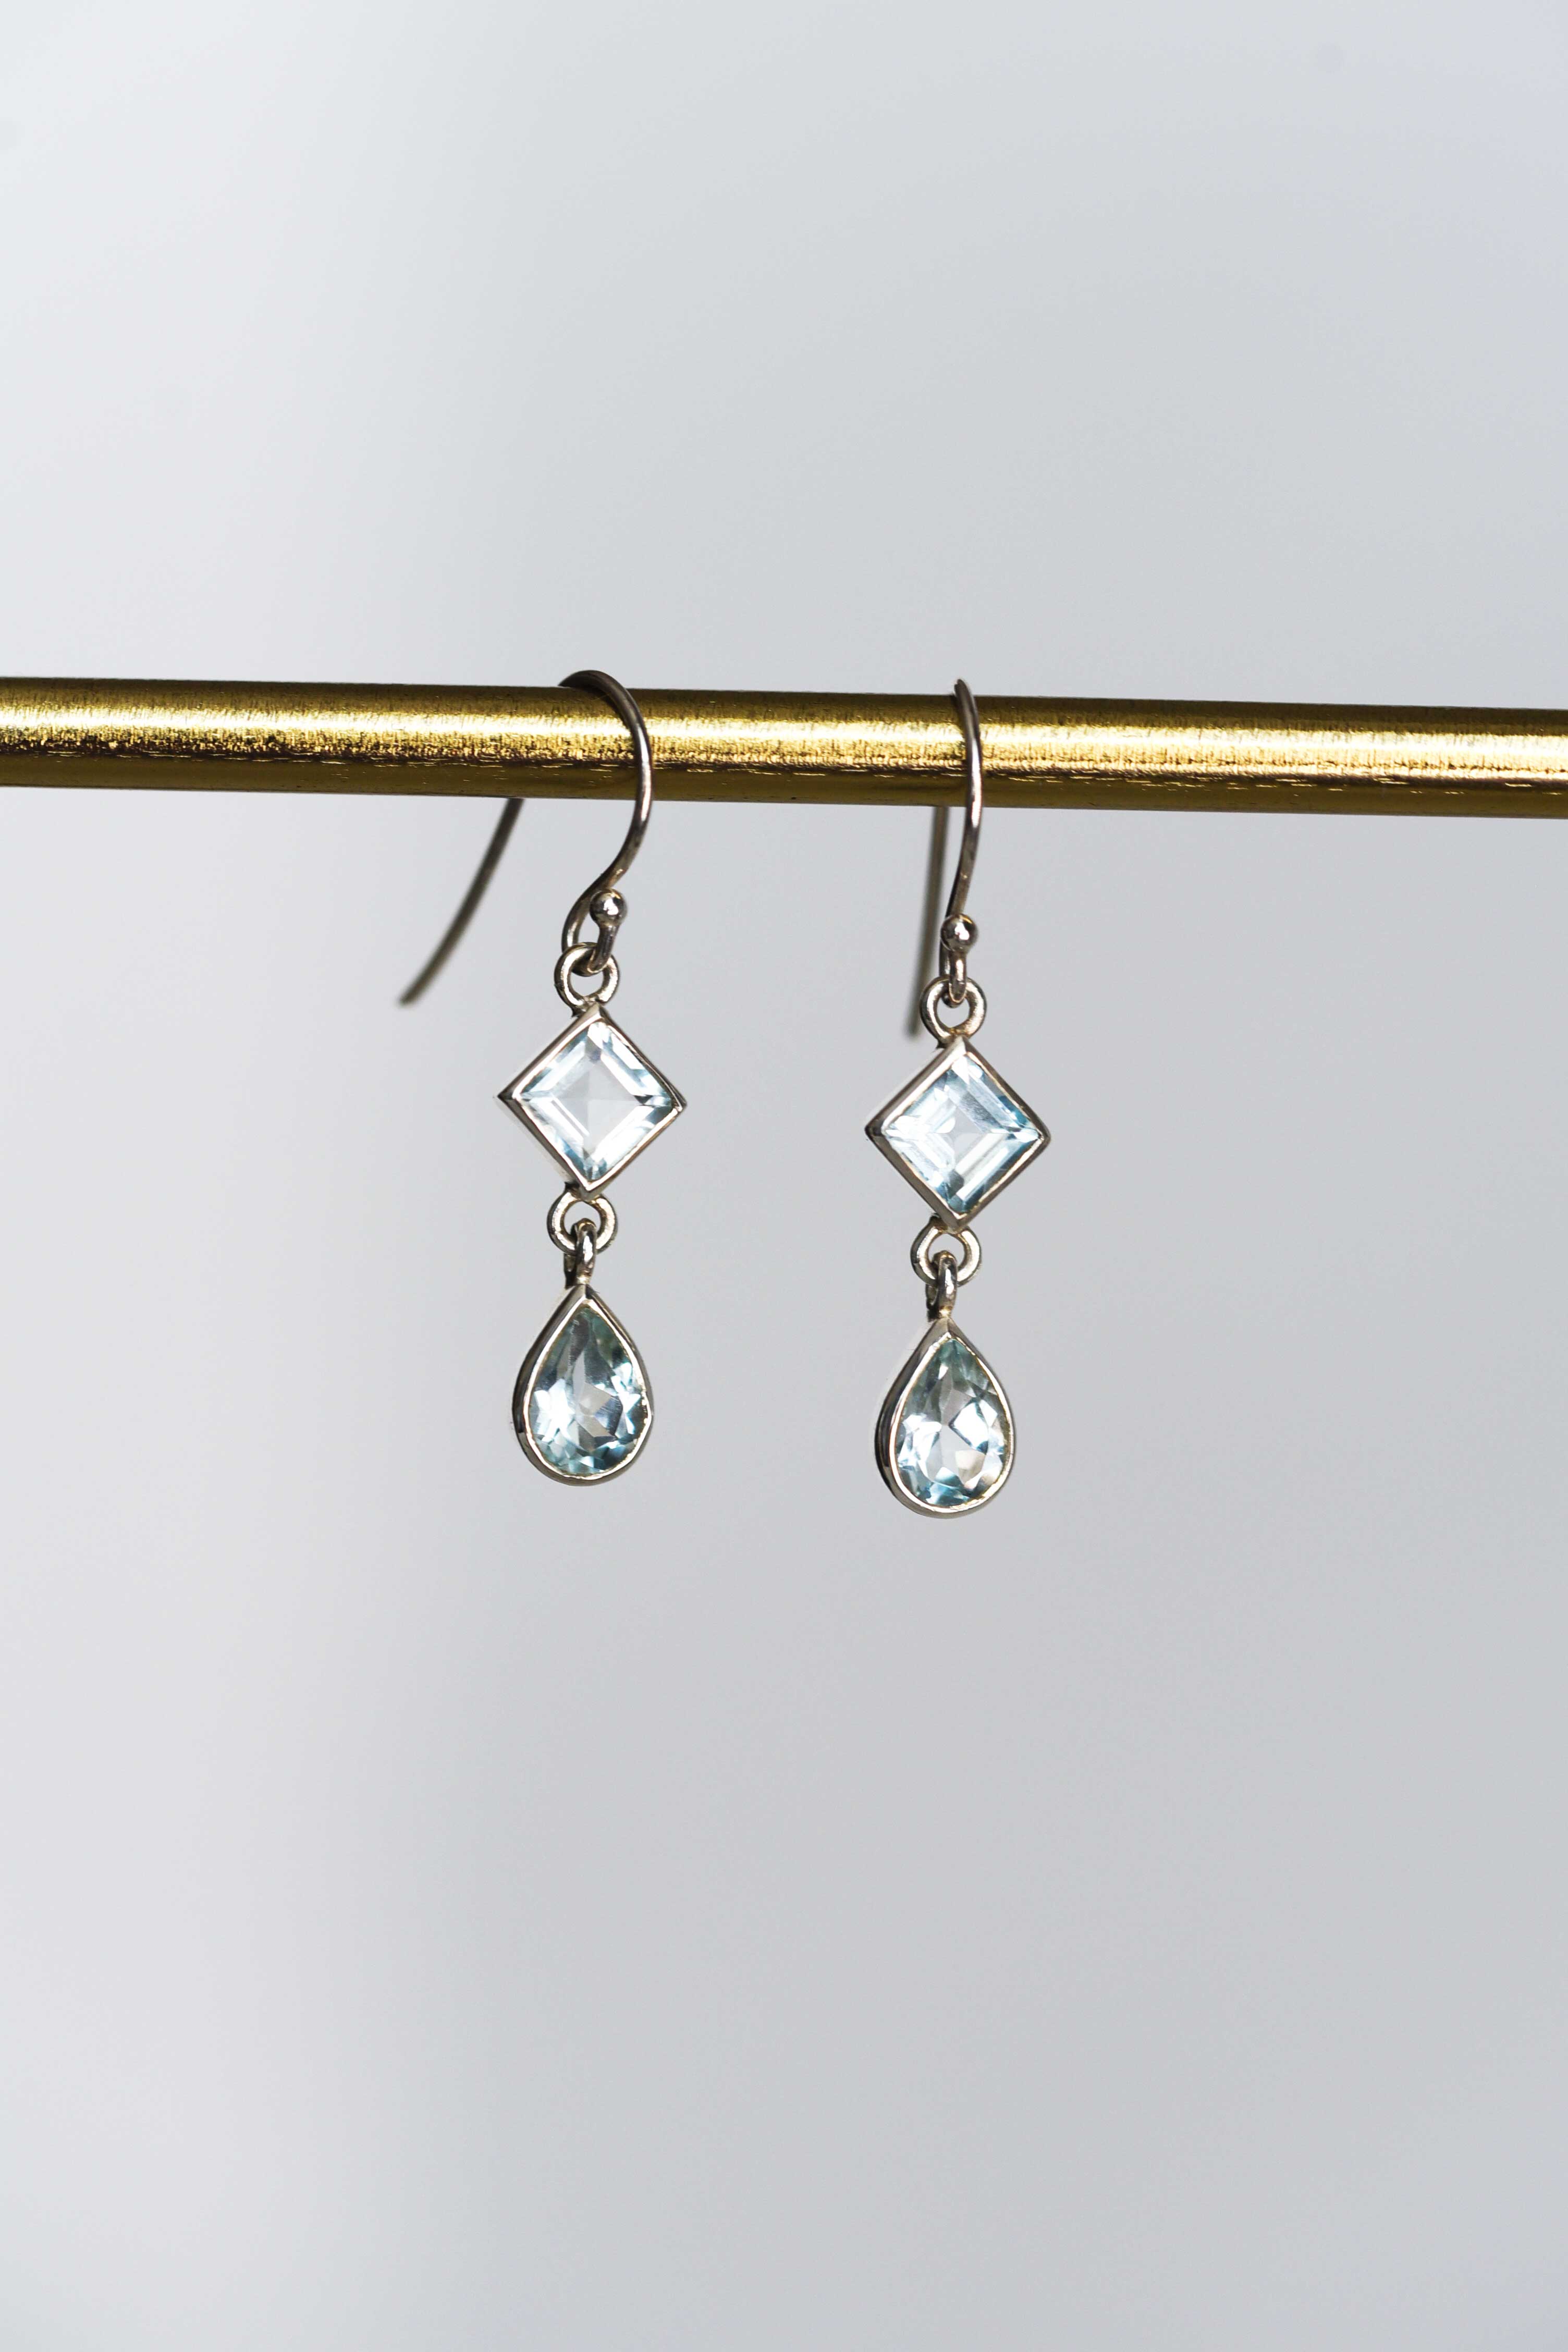 Blue Topaz Dangle Drop Earrings Sterling Silver gifts